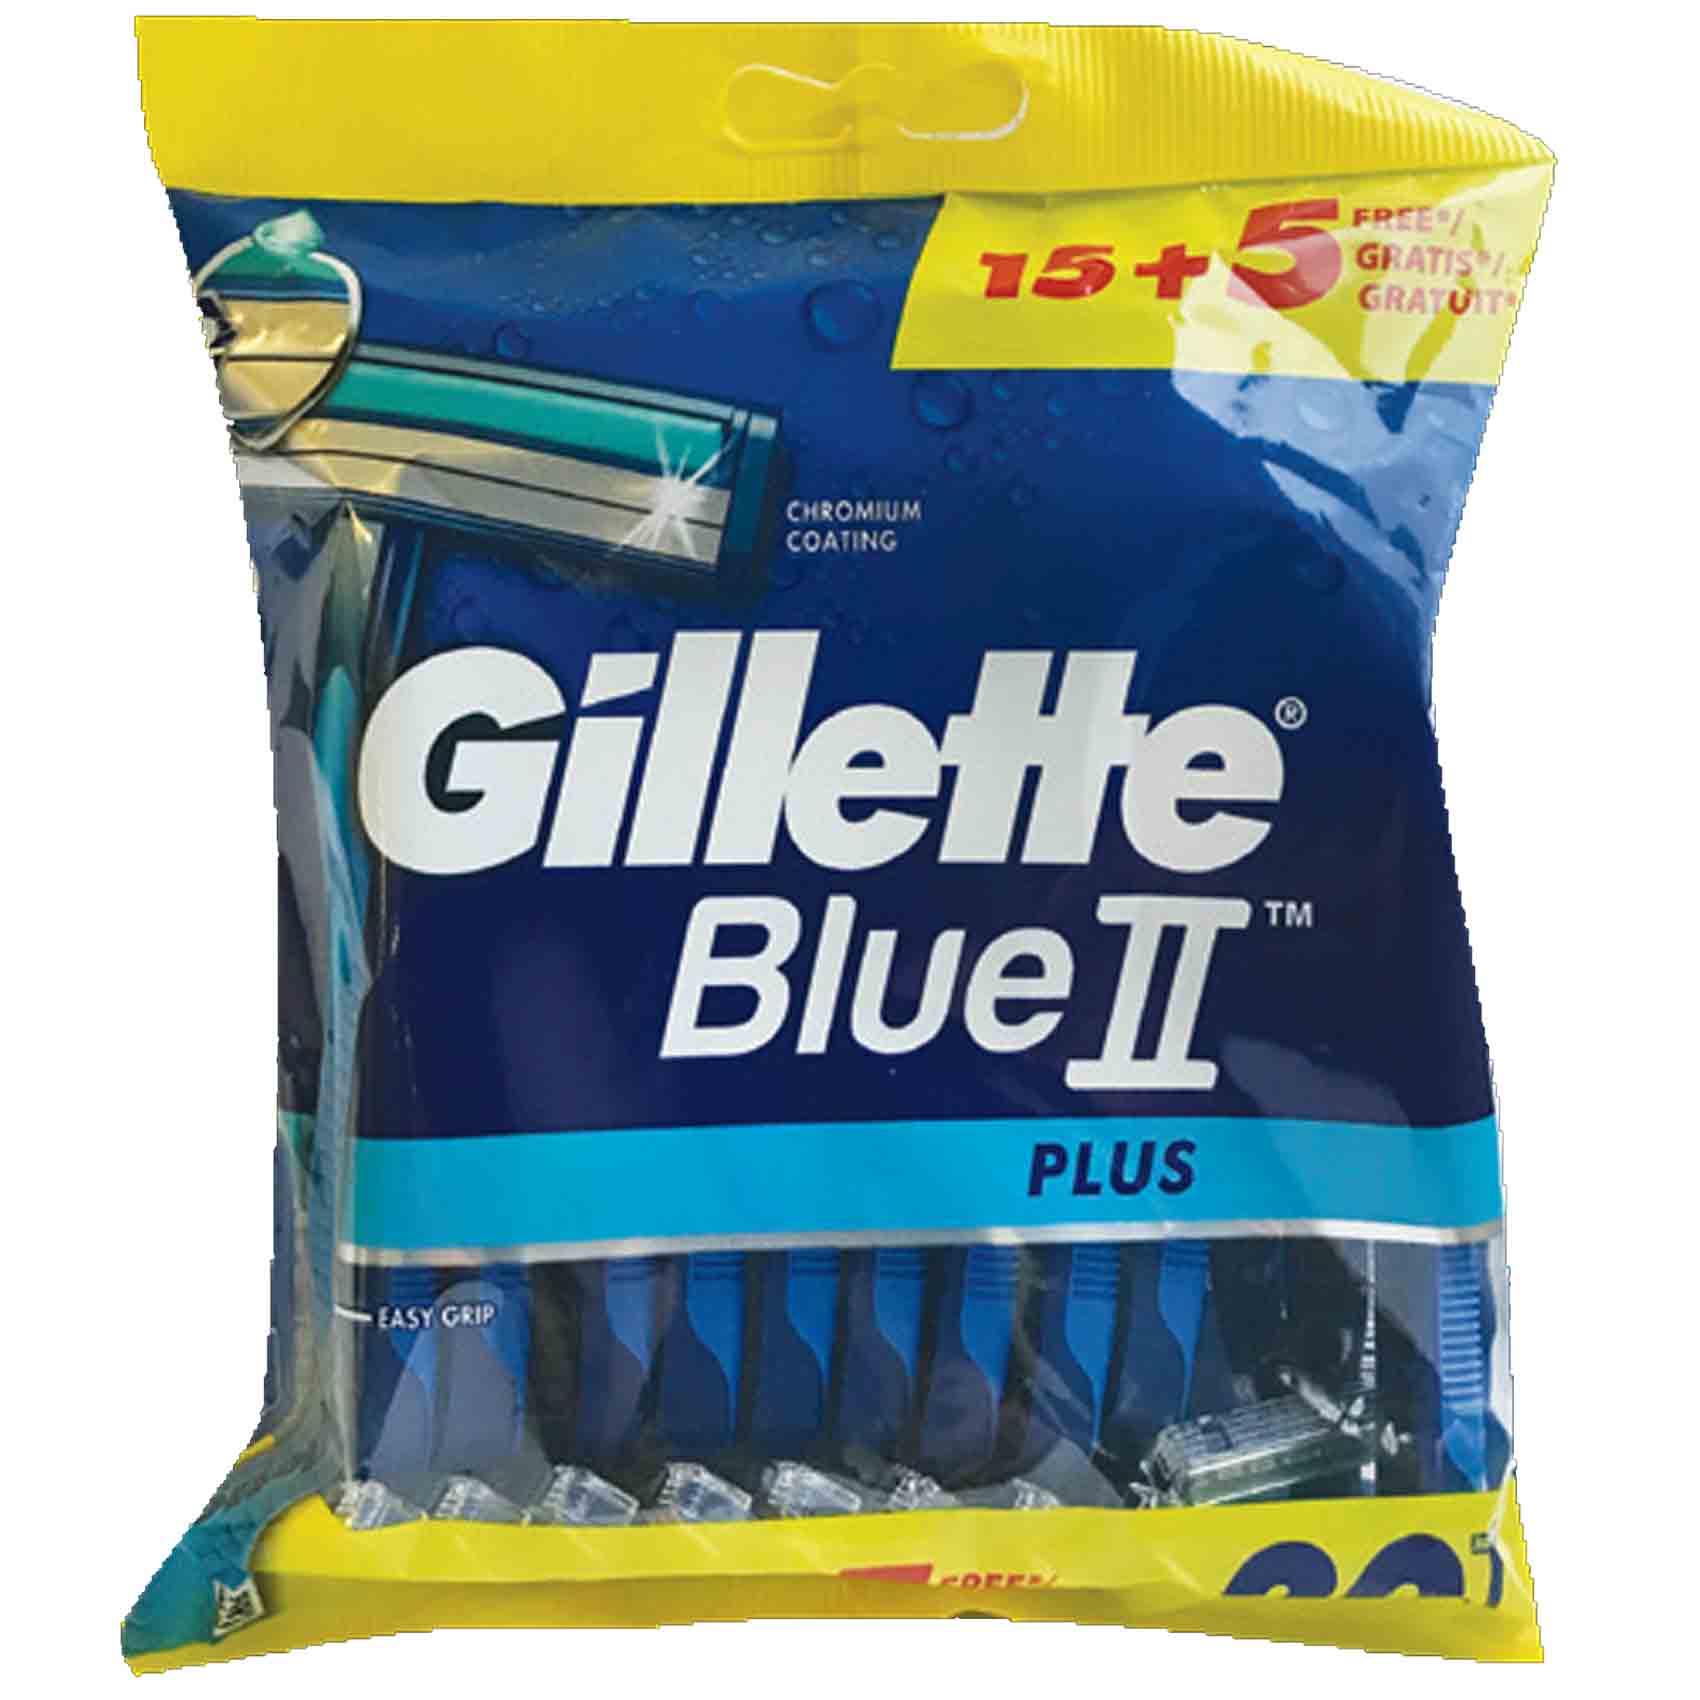 Gillette Disposable Blue 2 Blades 15 Pieces + 5 Pieces Free